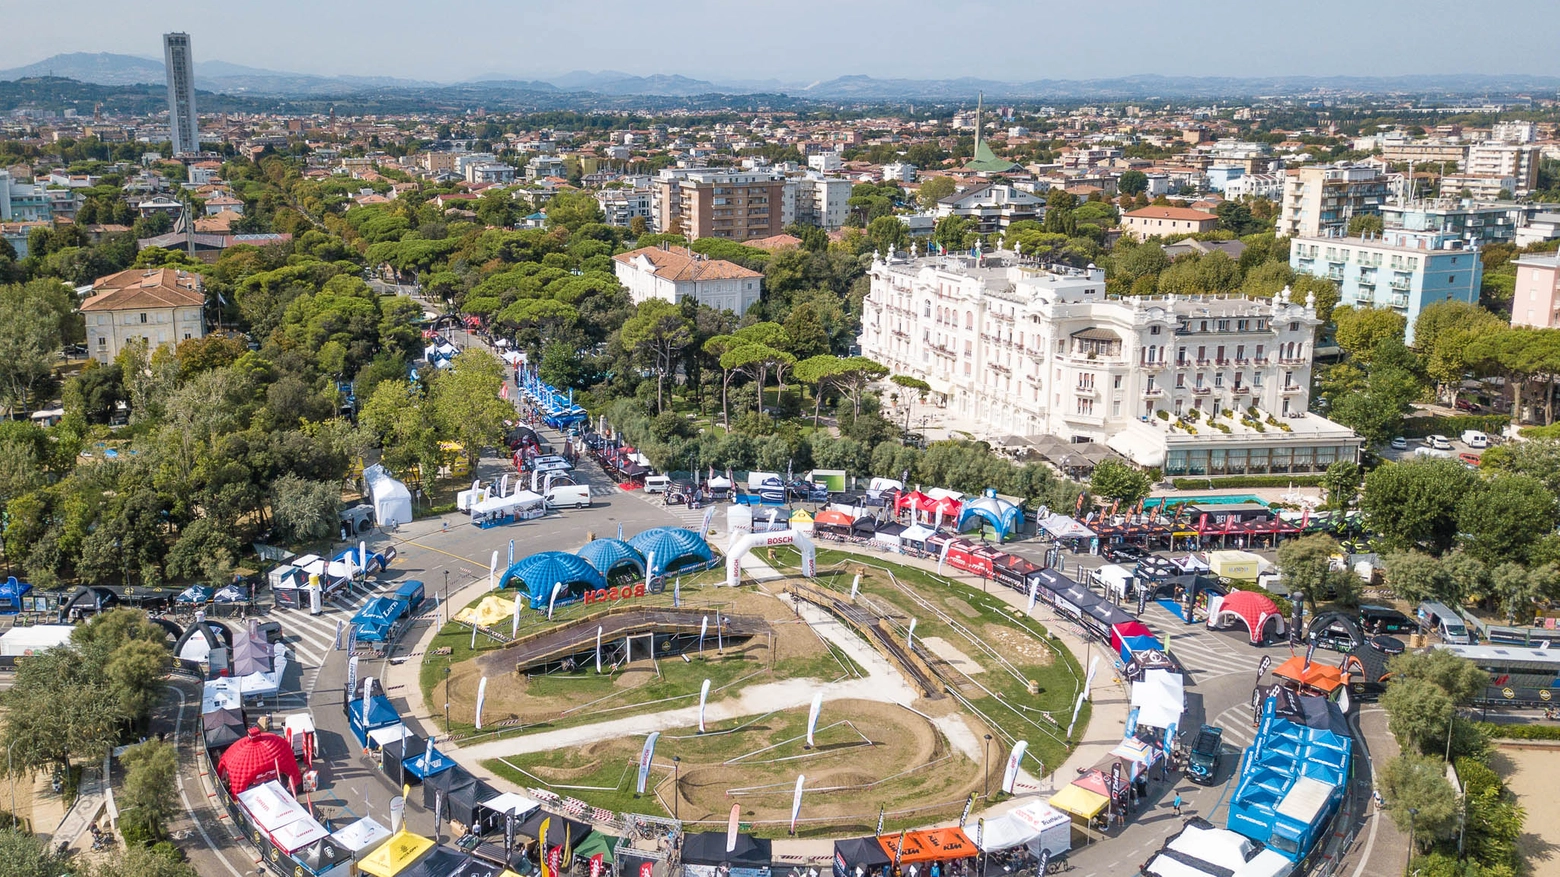 l'Italian bike festival visto dall'alto